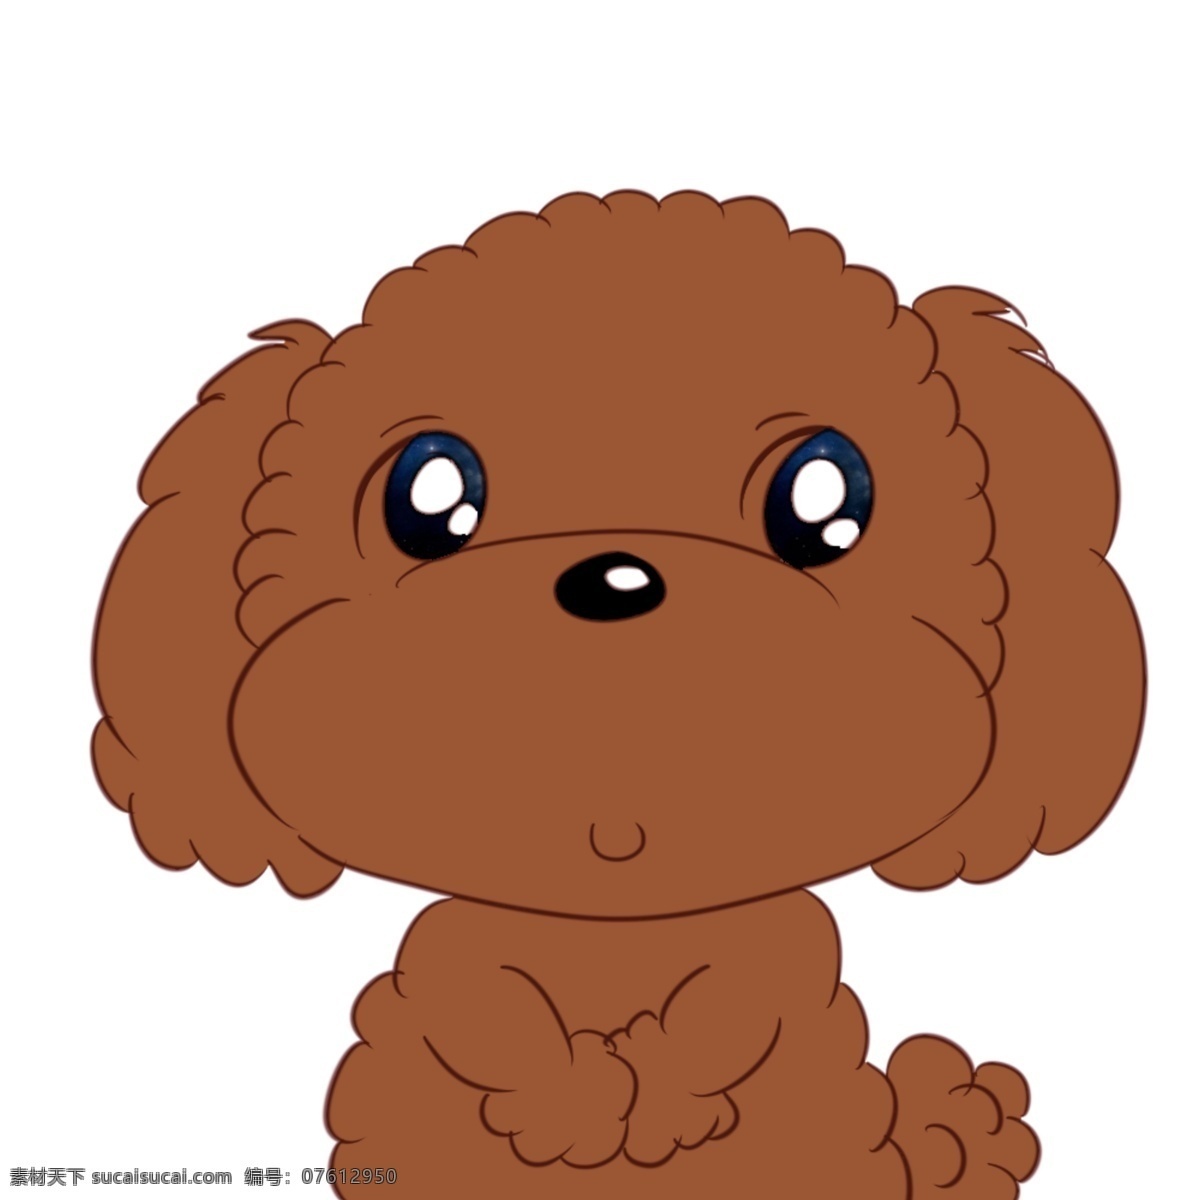 原创 可爱 卡通 手绘 泰迪 宠物狗 插画 儿童画 动物